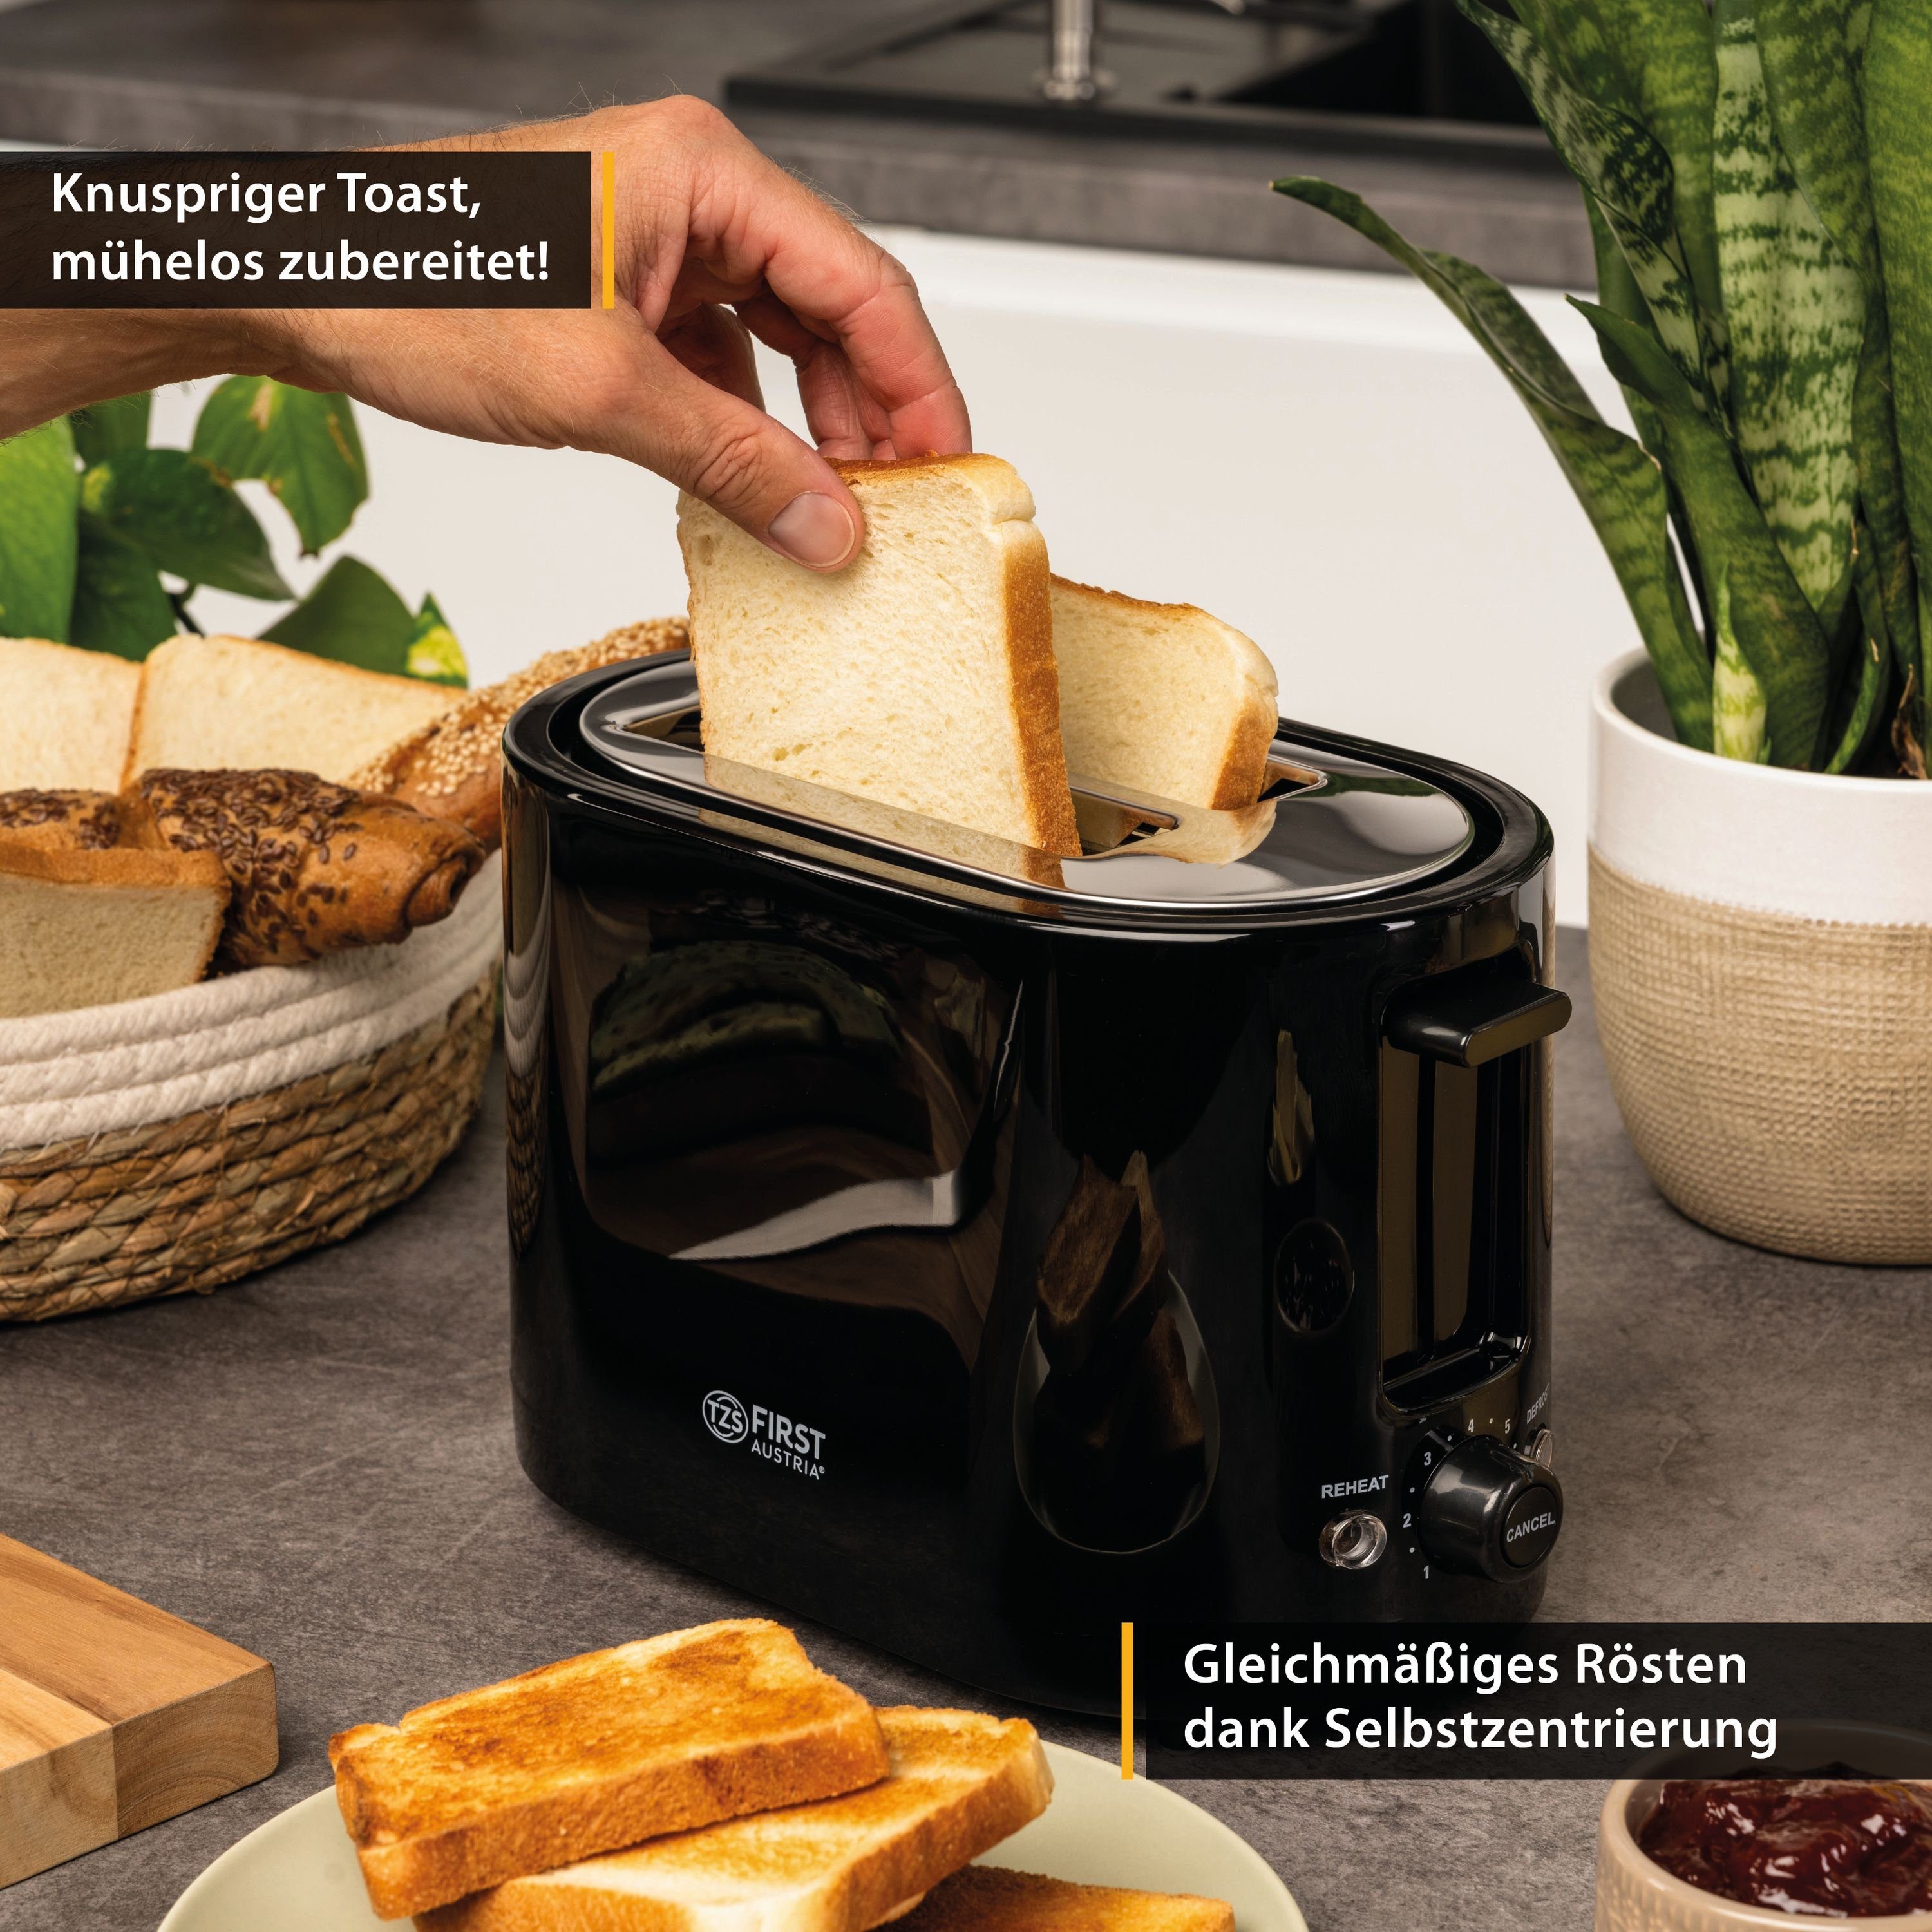 TZS FIRST AUSTRIA Toaster für 2 Auftaufunktion, schwarz, Krümelschale inkl. Warmhalte- Toaster, 7 Scheiben, Stufen, und